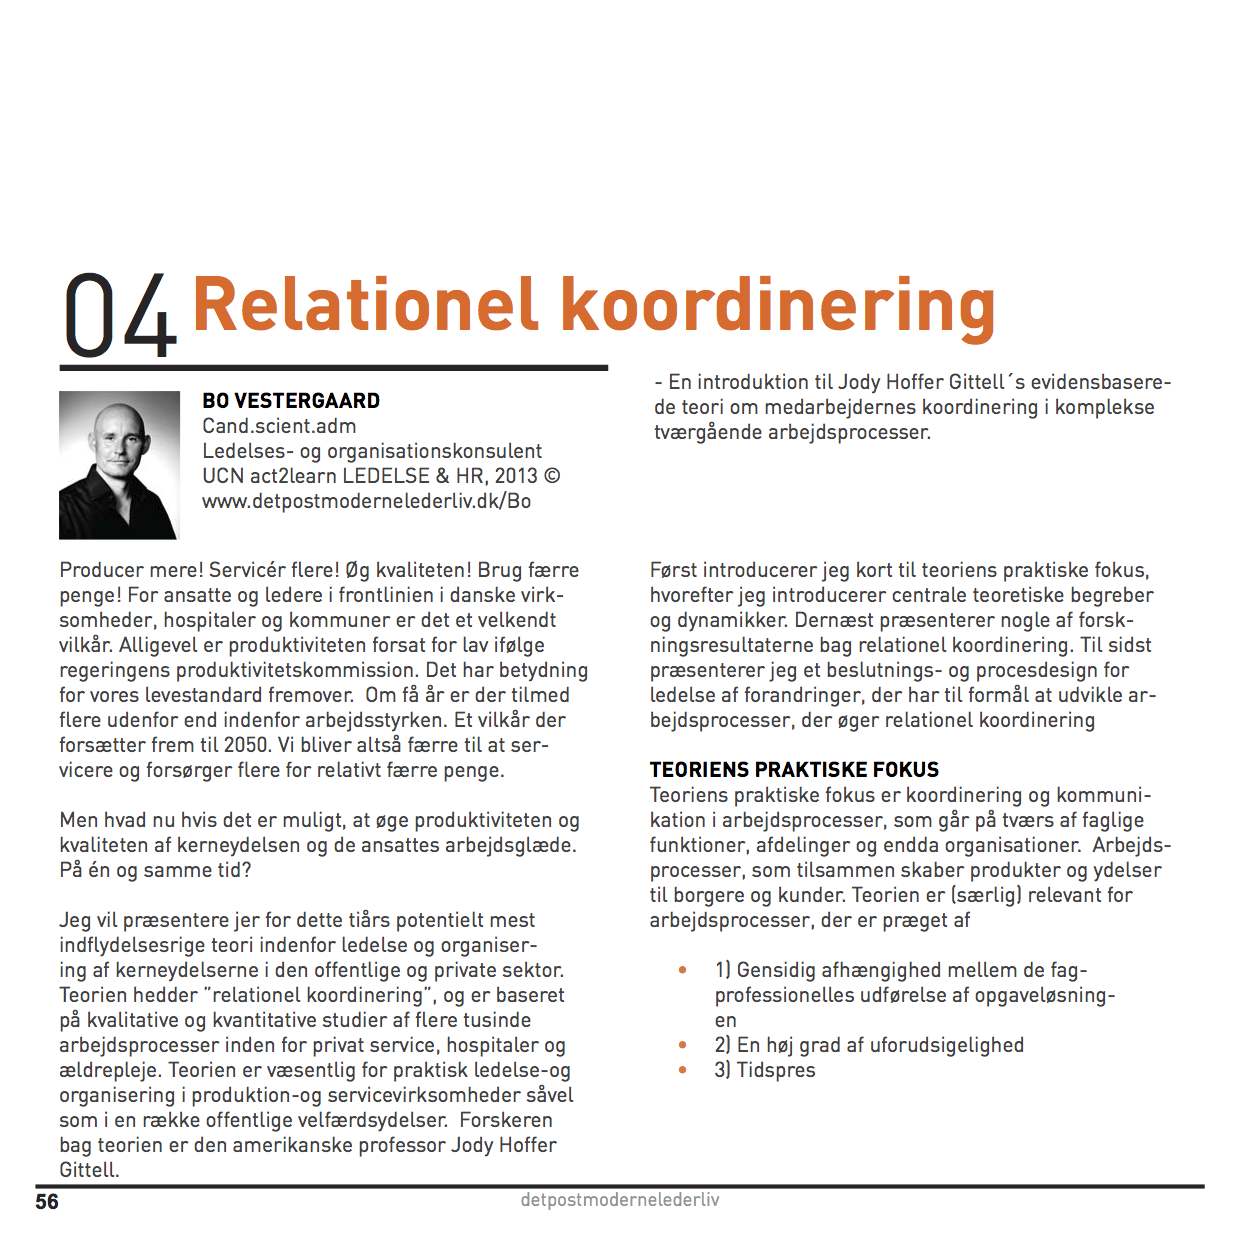 Bo Vestergaard (2013) Relationel koordinering - En introduktion til professor Jody Hoffer Gittells evidensbaserede teori om medarbejderens koordinering i komplekse tværgående processer